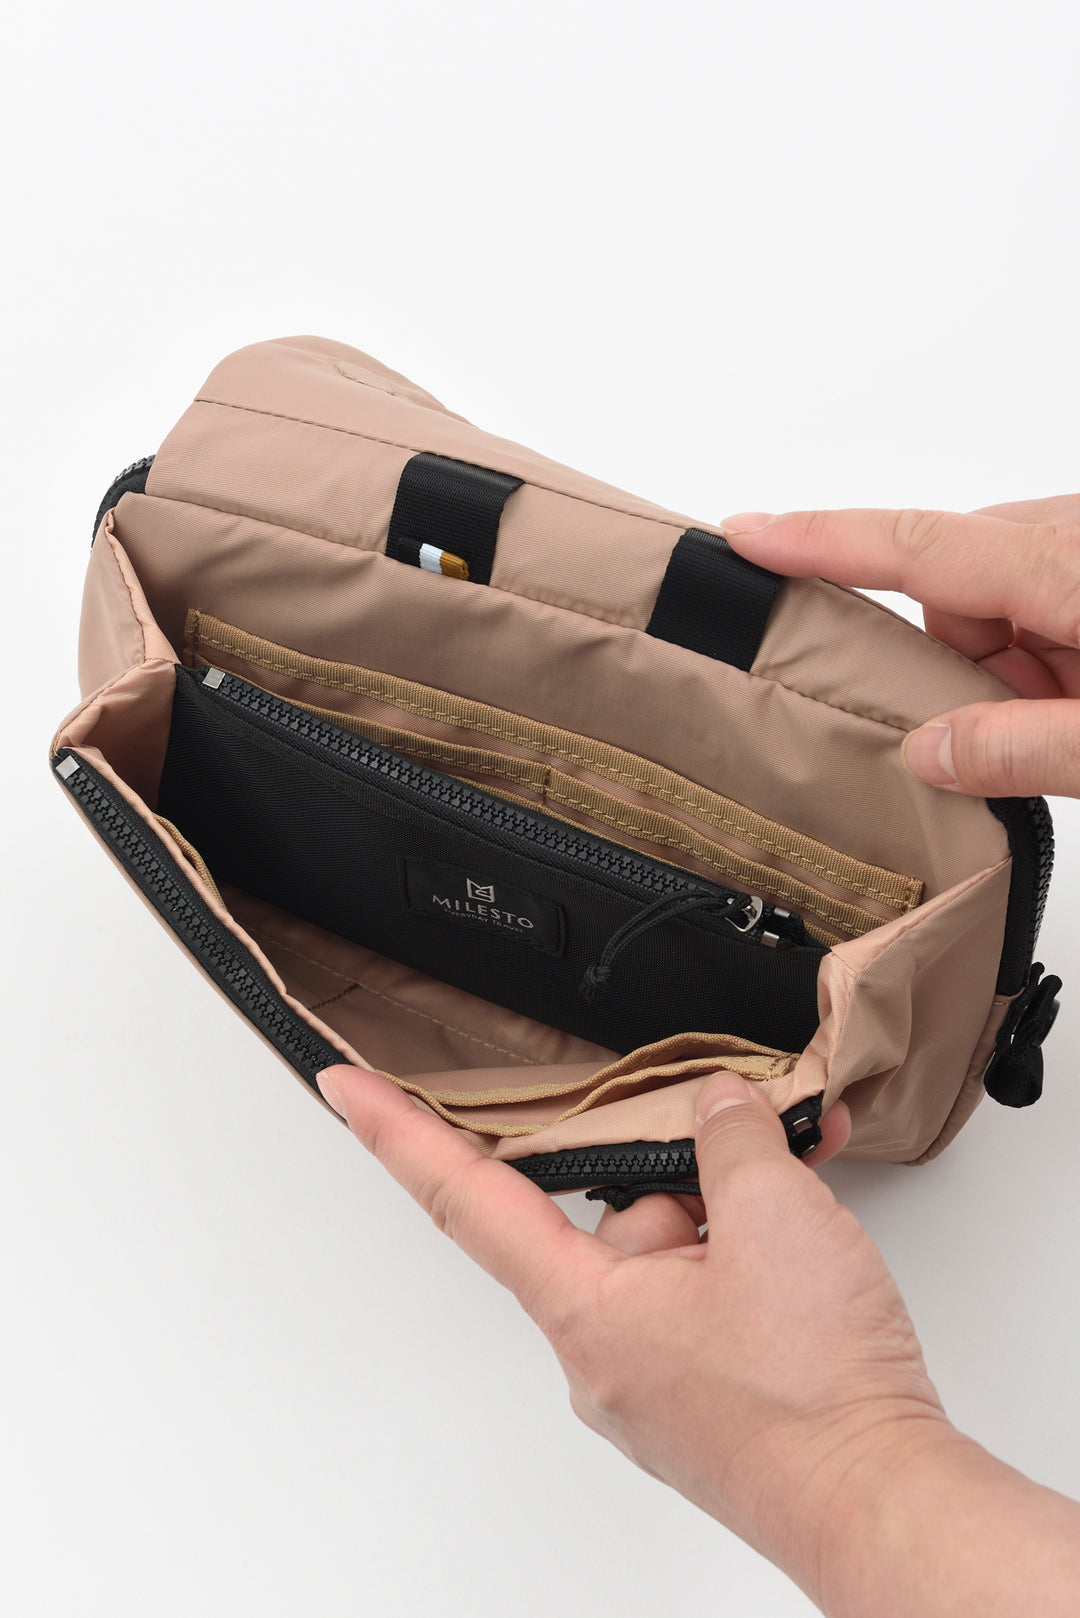 MILESTO TROT Multi Shoulder Bag - Beige MLS878-BE